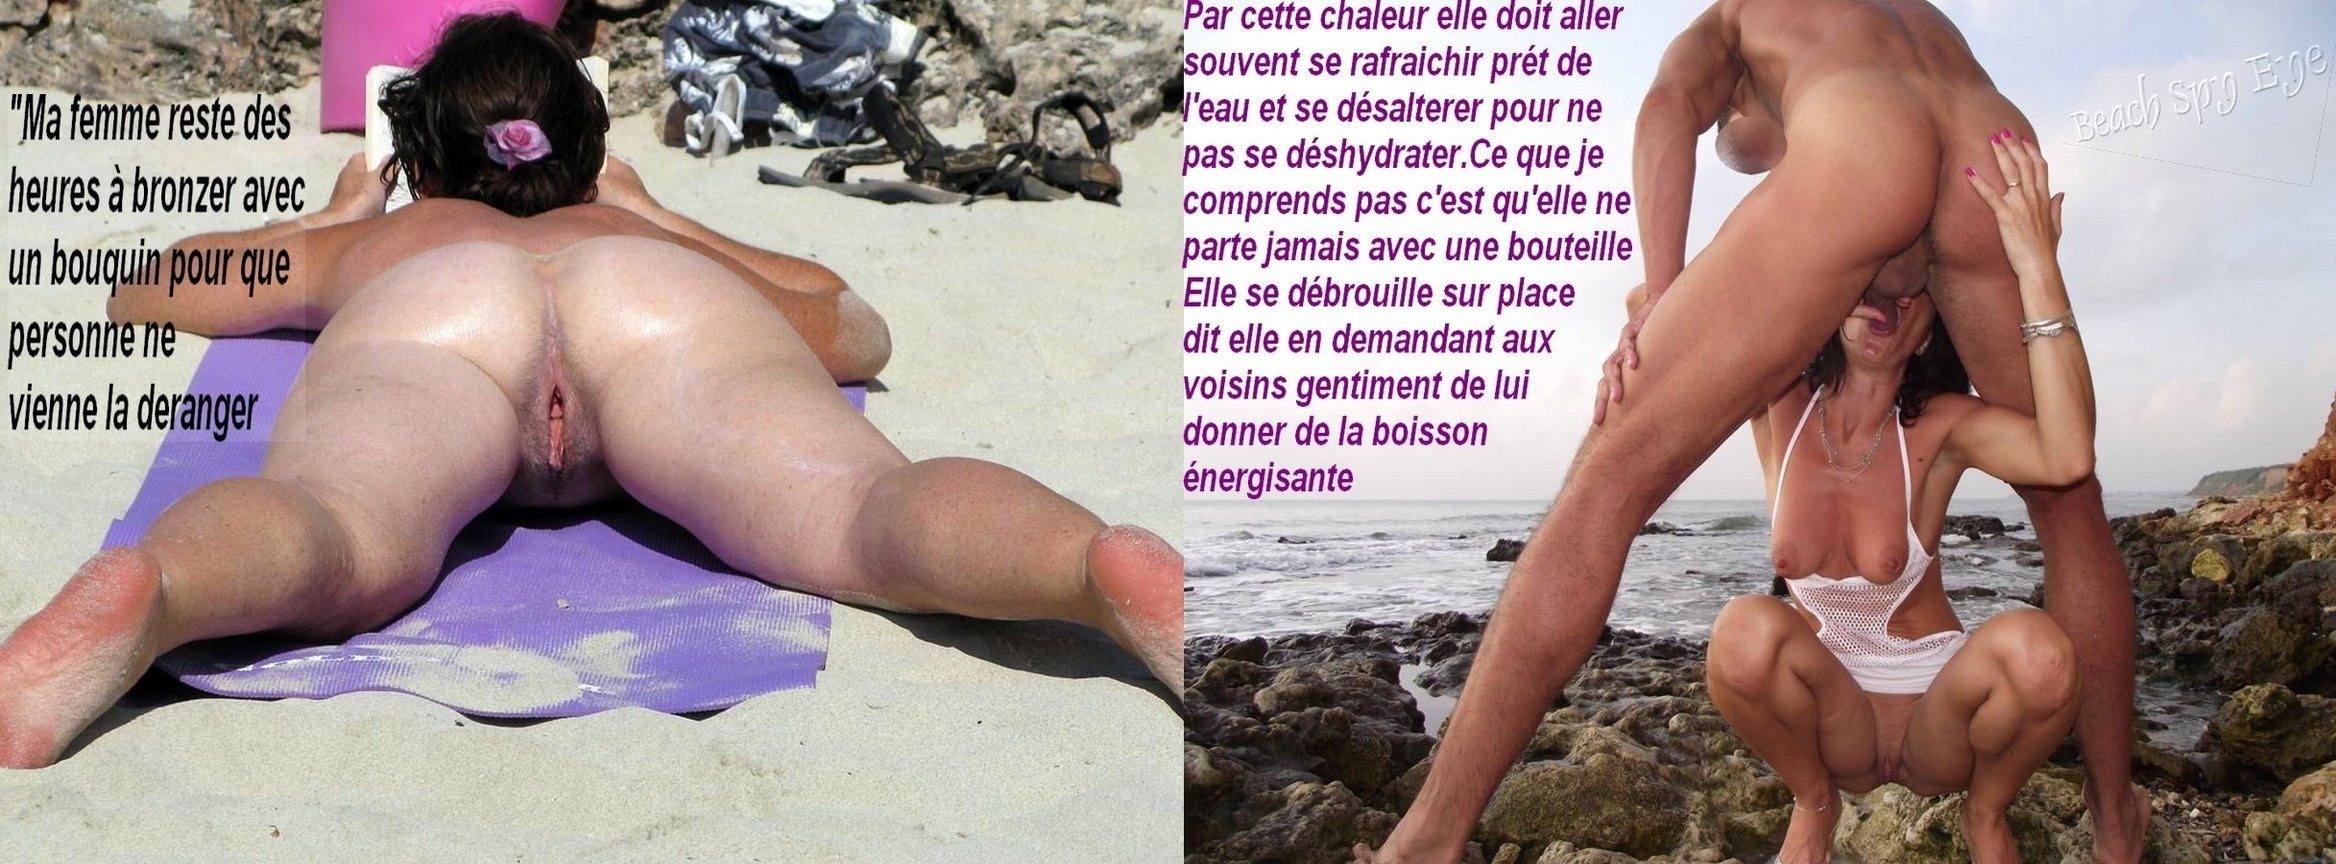 жену на пляже порно истории фото 95